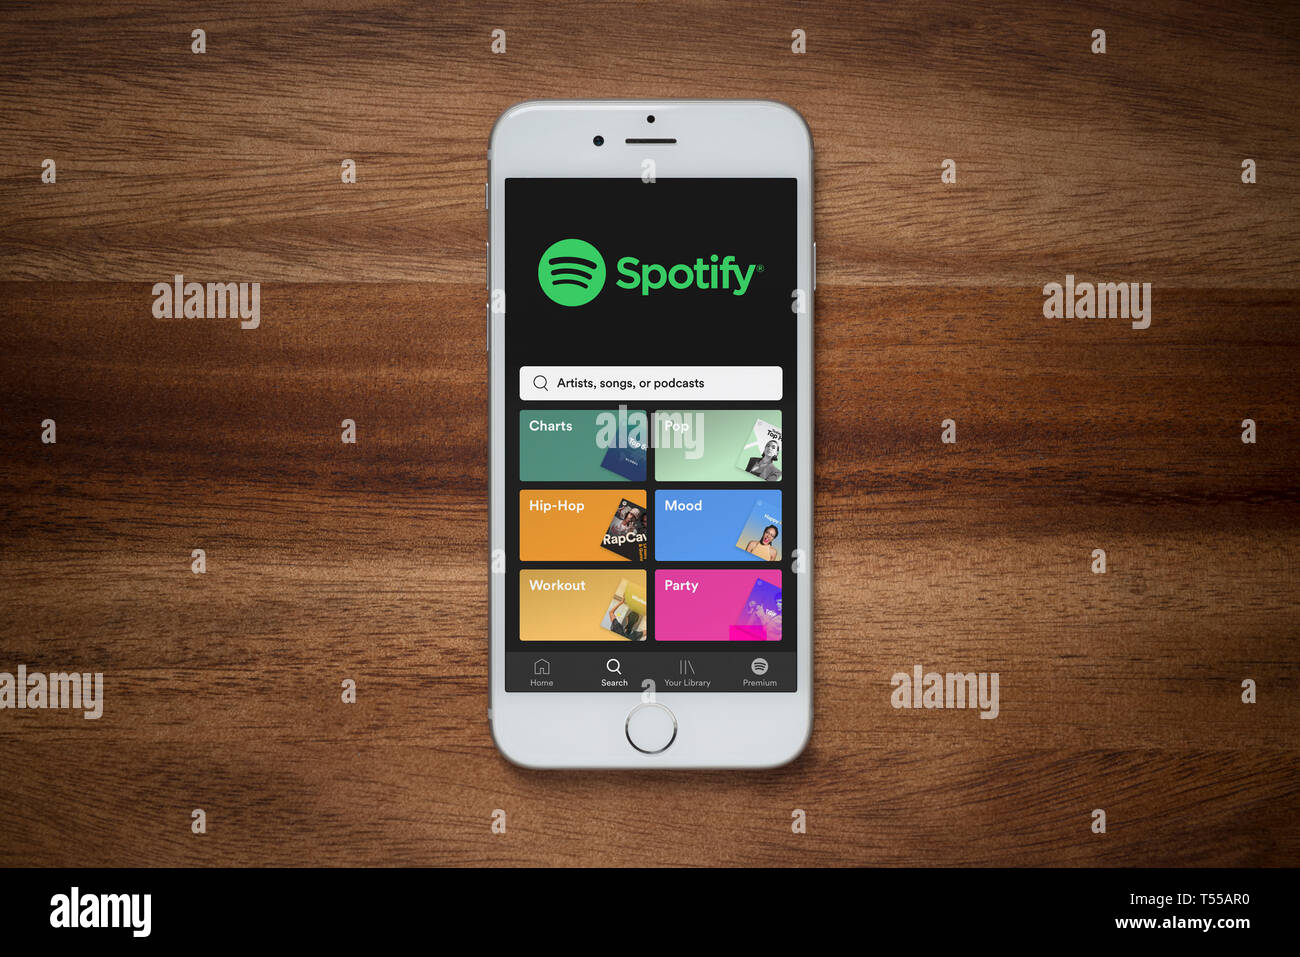 Un iPhone que muestra el sitio web de Spotify descansa sobre una mesa de madera normal (uso Editorial solamente). Foto de stock